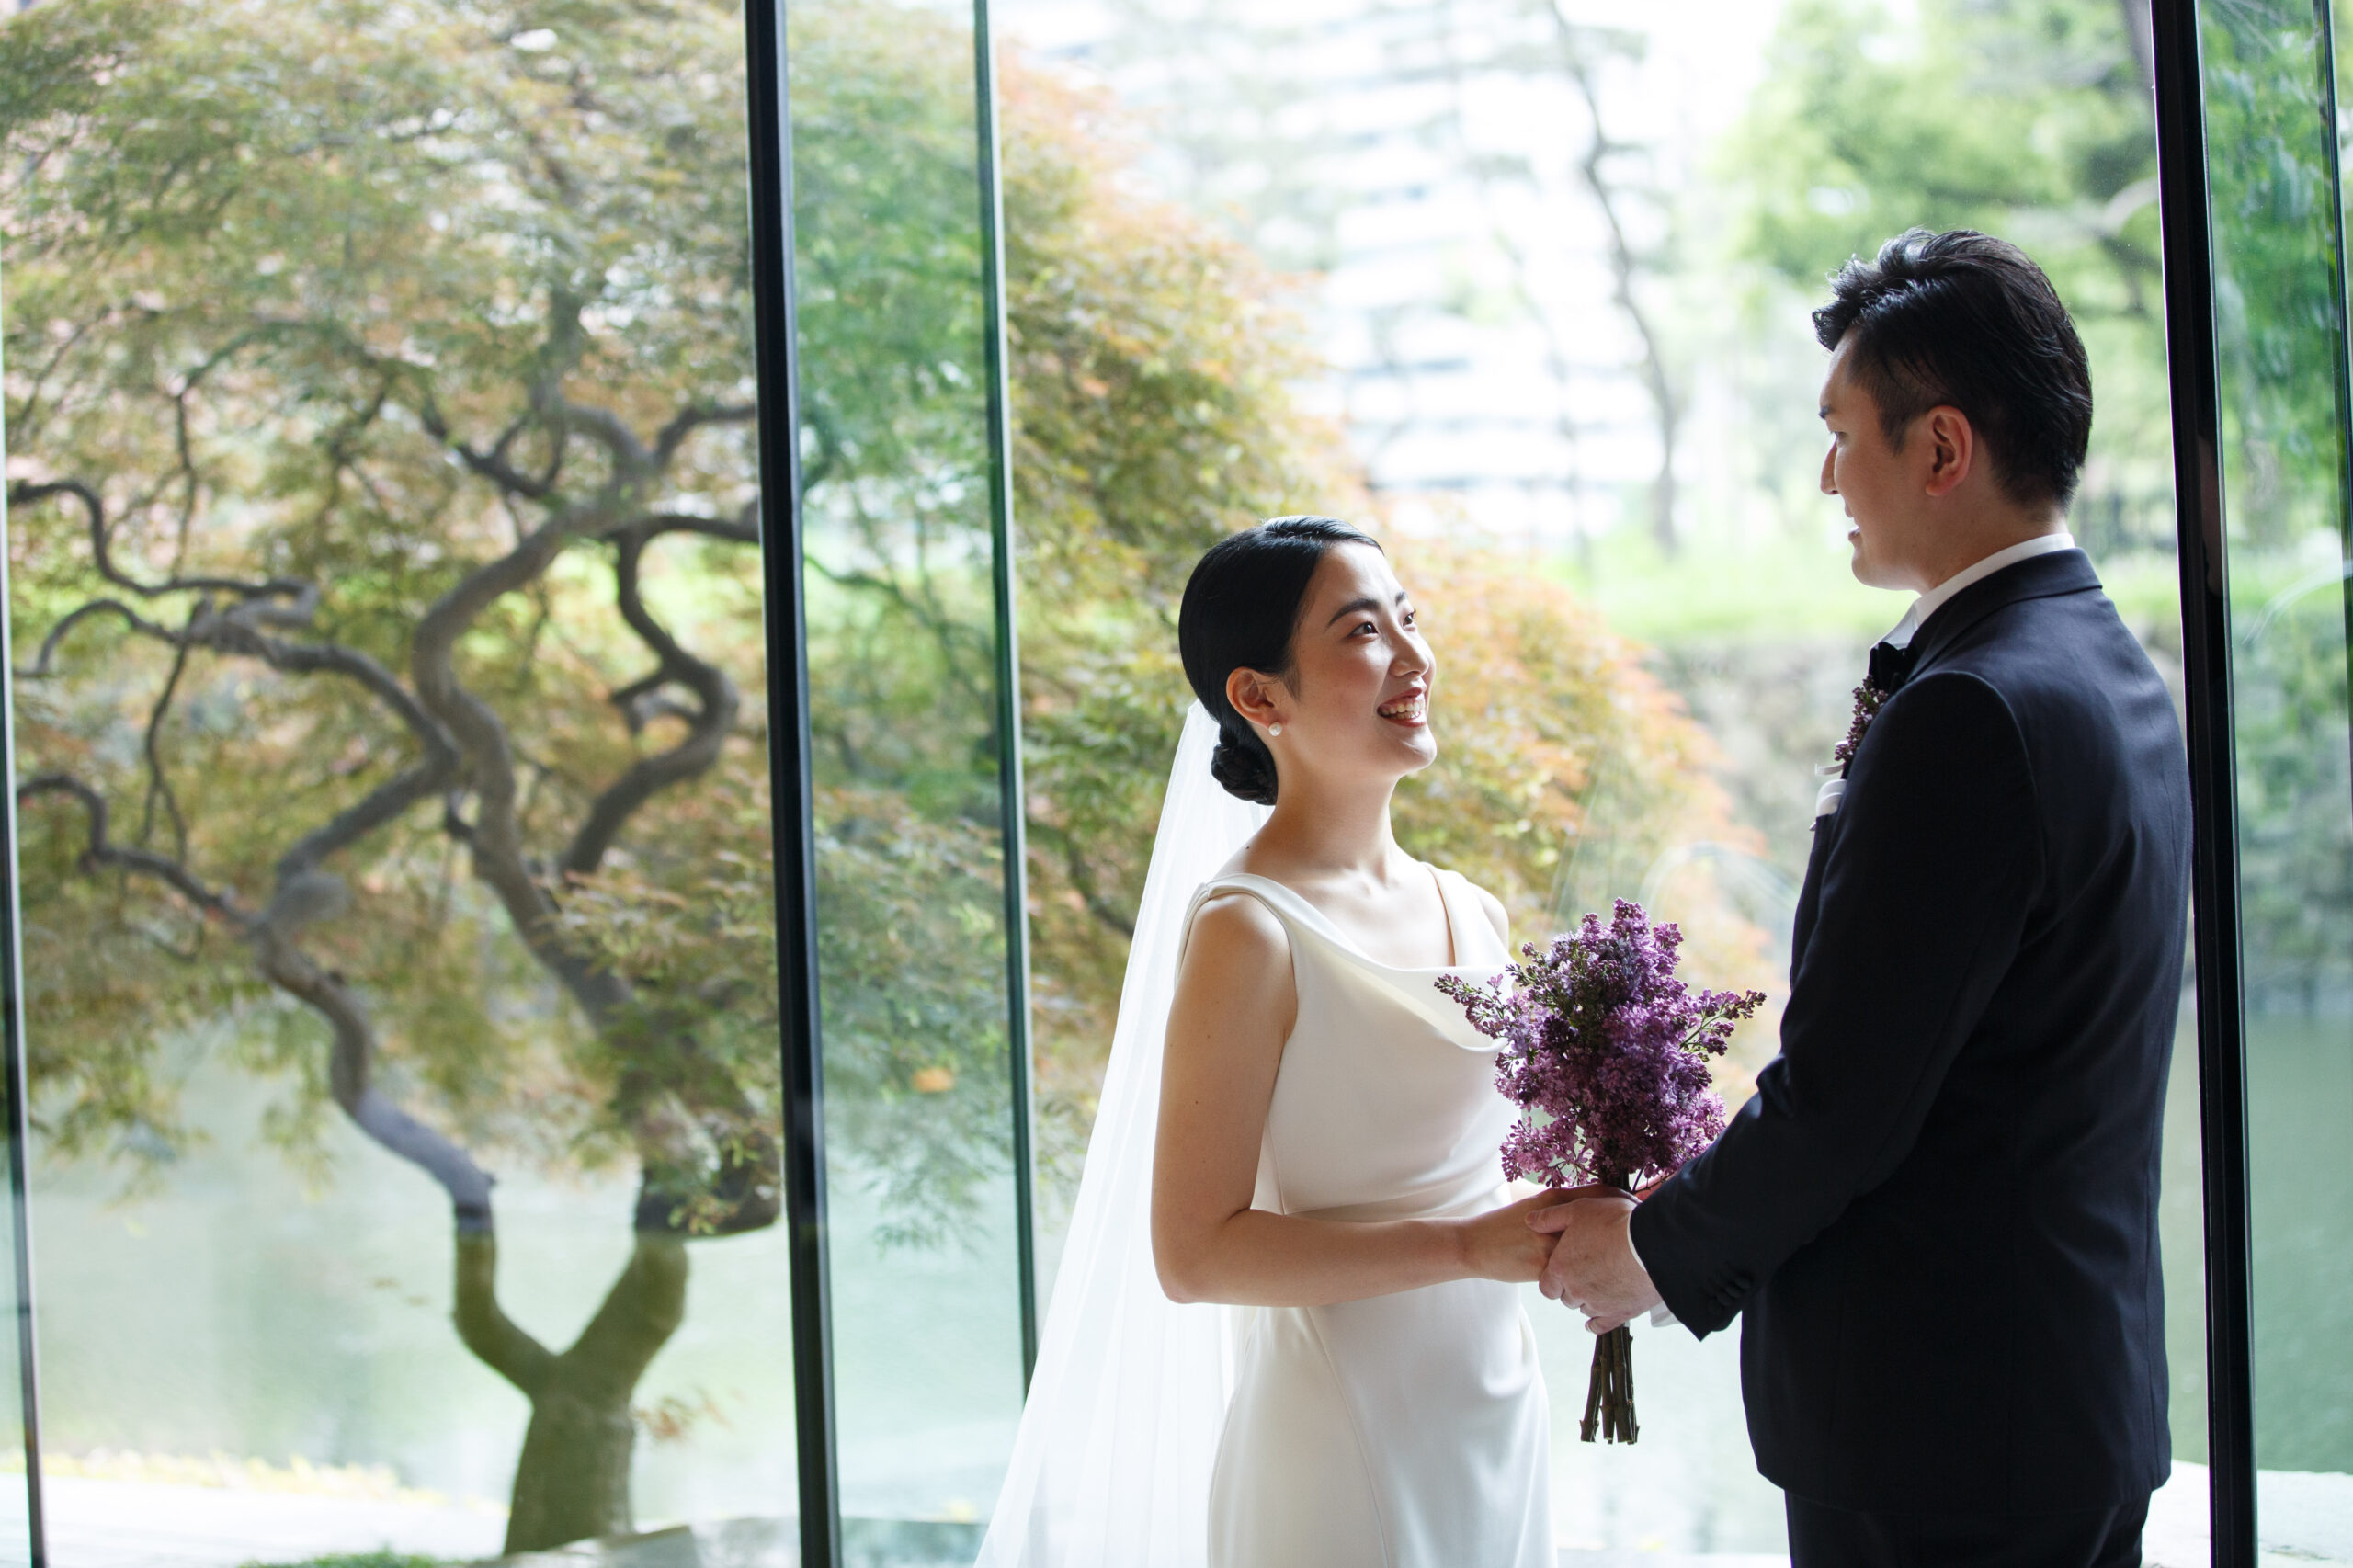 ザトリートドレッシングアディション店の提携会場パレスホテル東京で行われたお二人らしさをたっぷりと詰め込んだ結婚式のご紹介。